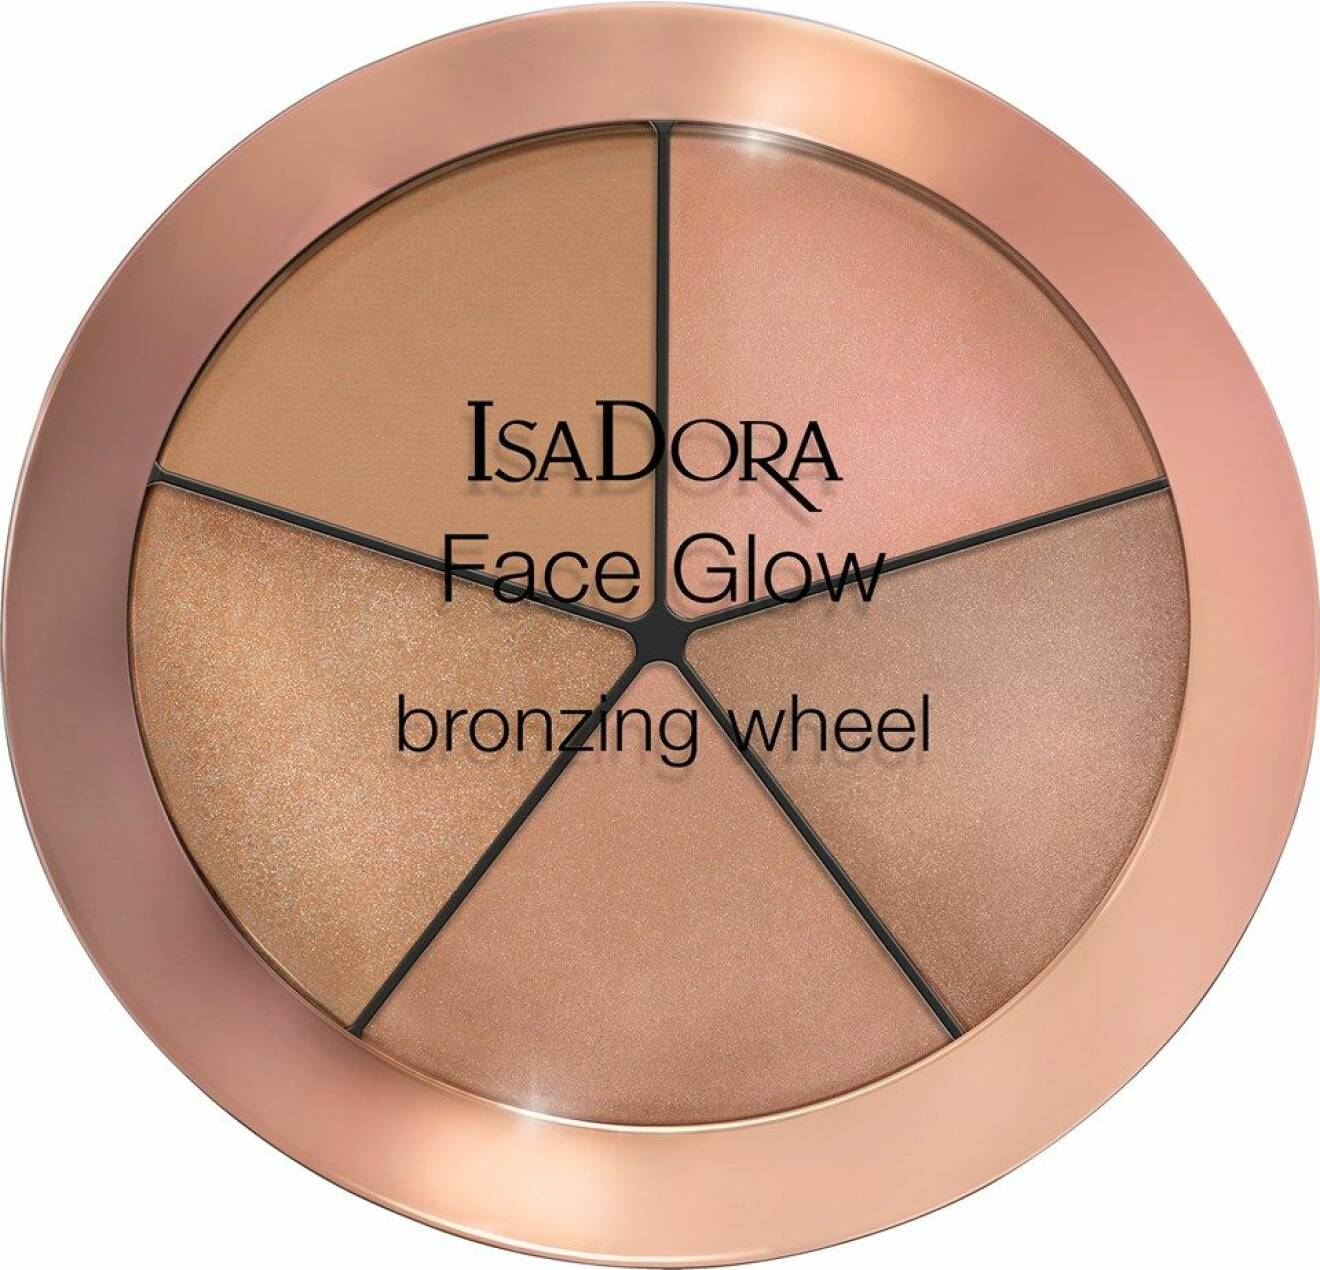 Face glow bronzing wheel, Isadora.